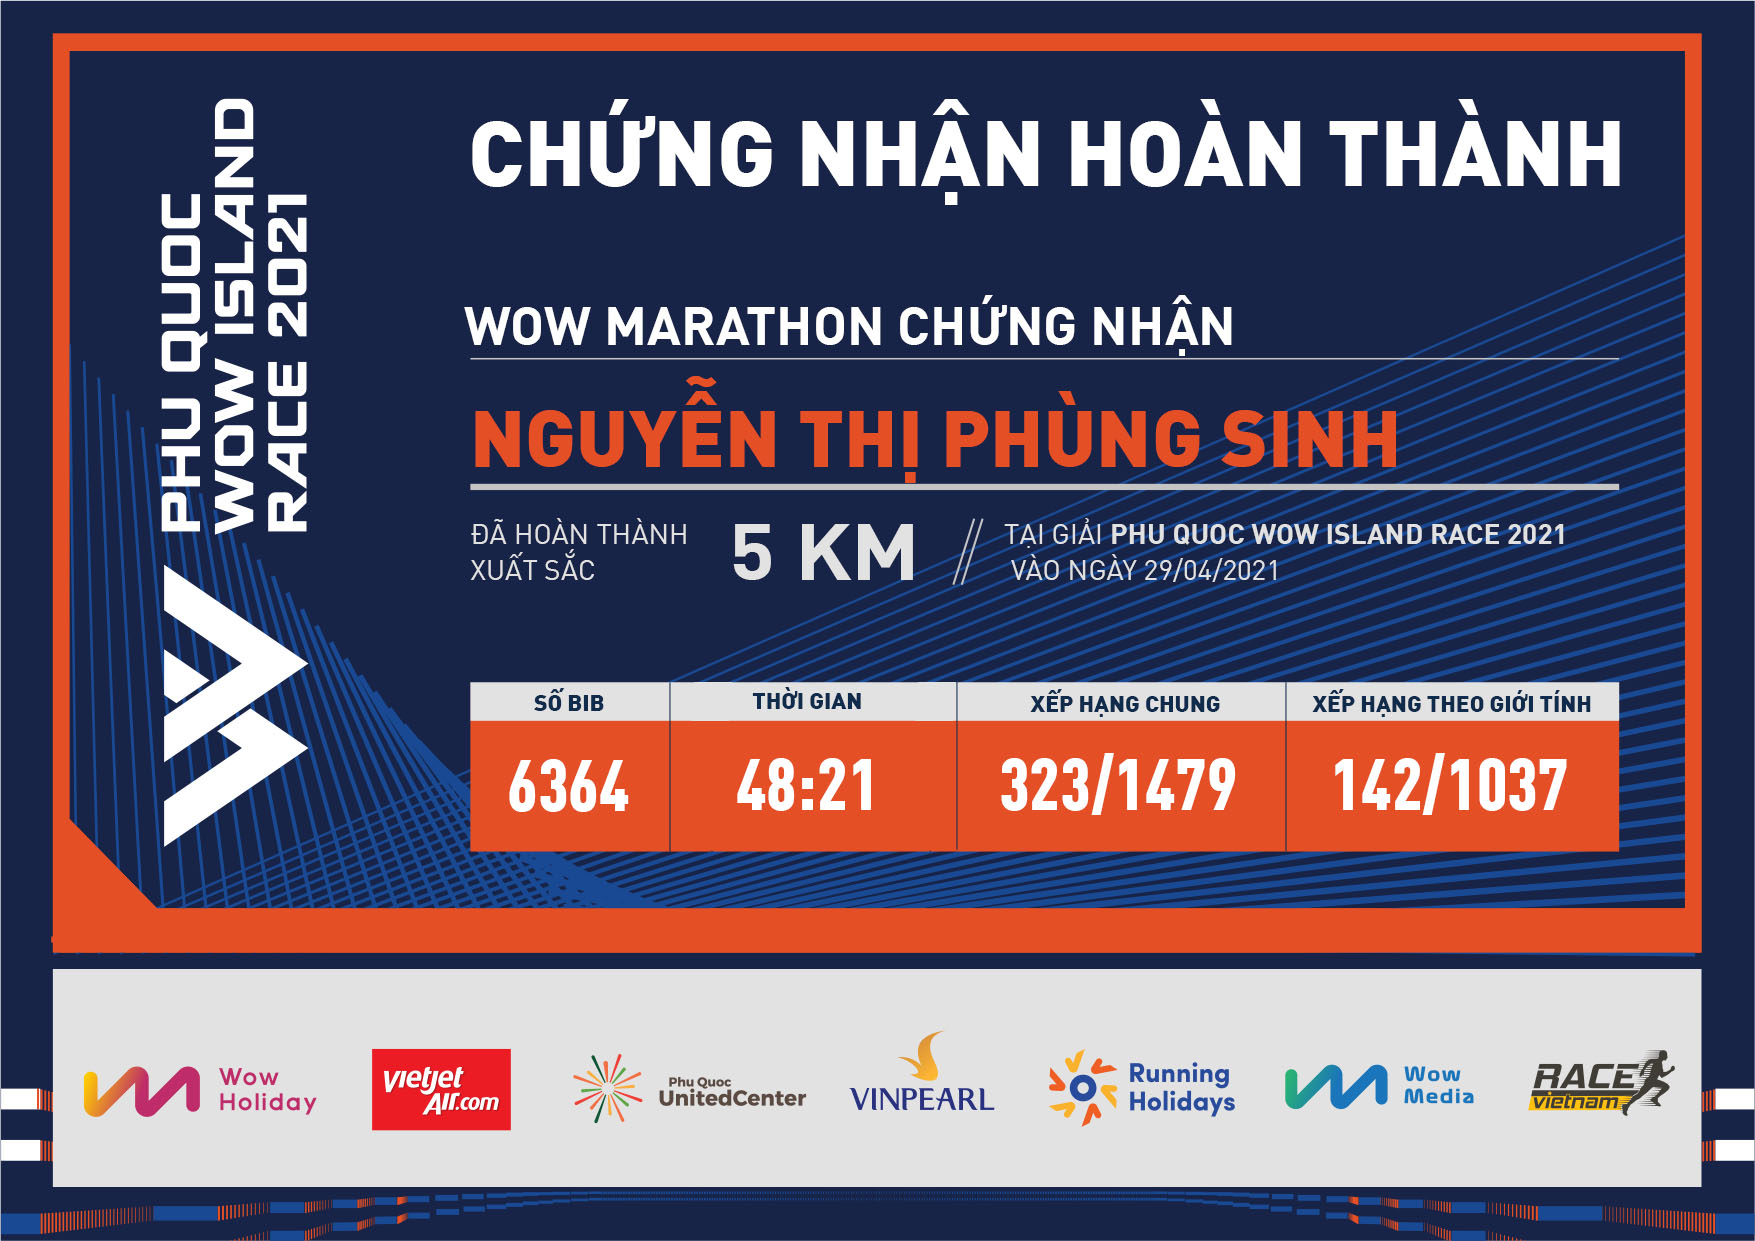 6364 - Nguyễn Thị Phùng Sinh